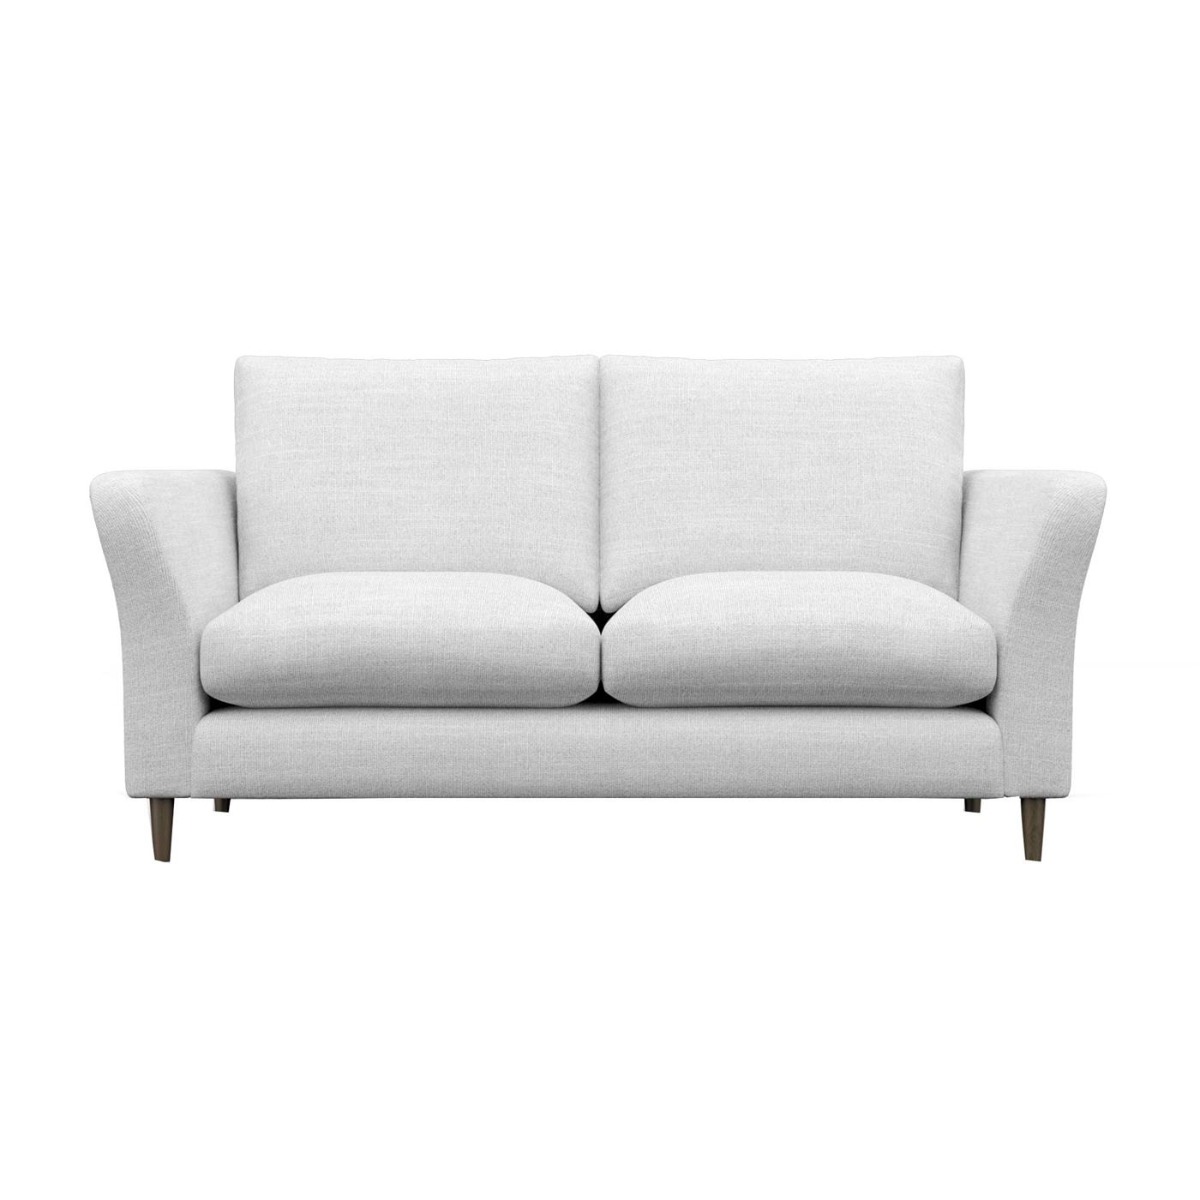 Rowena Small Sofa, White Fabric | Barker & Stonehouse